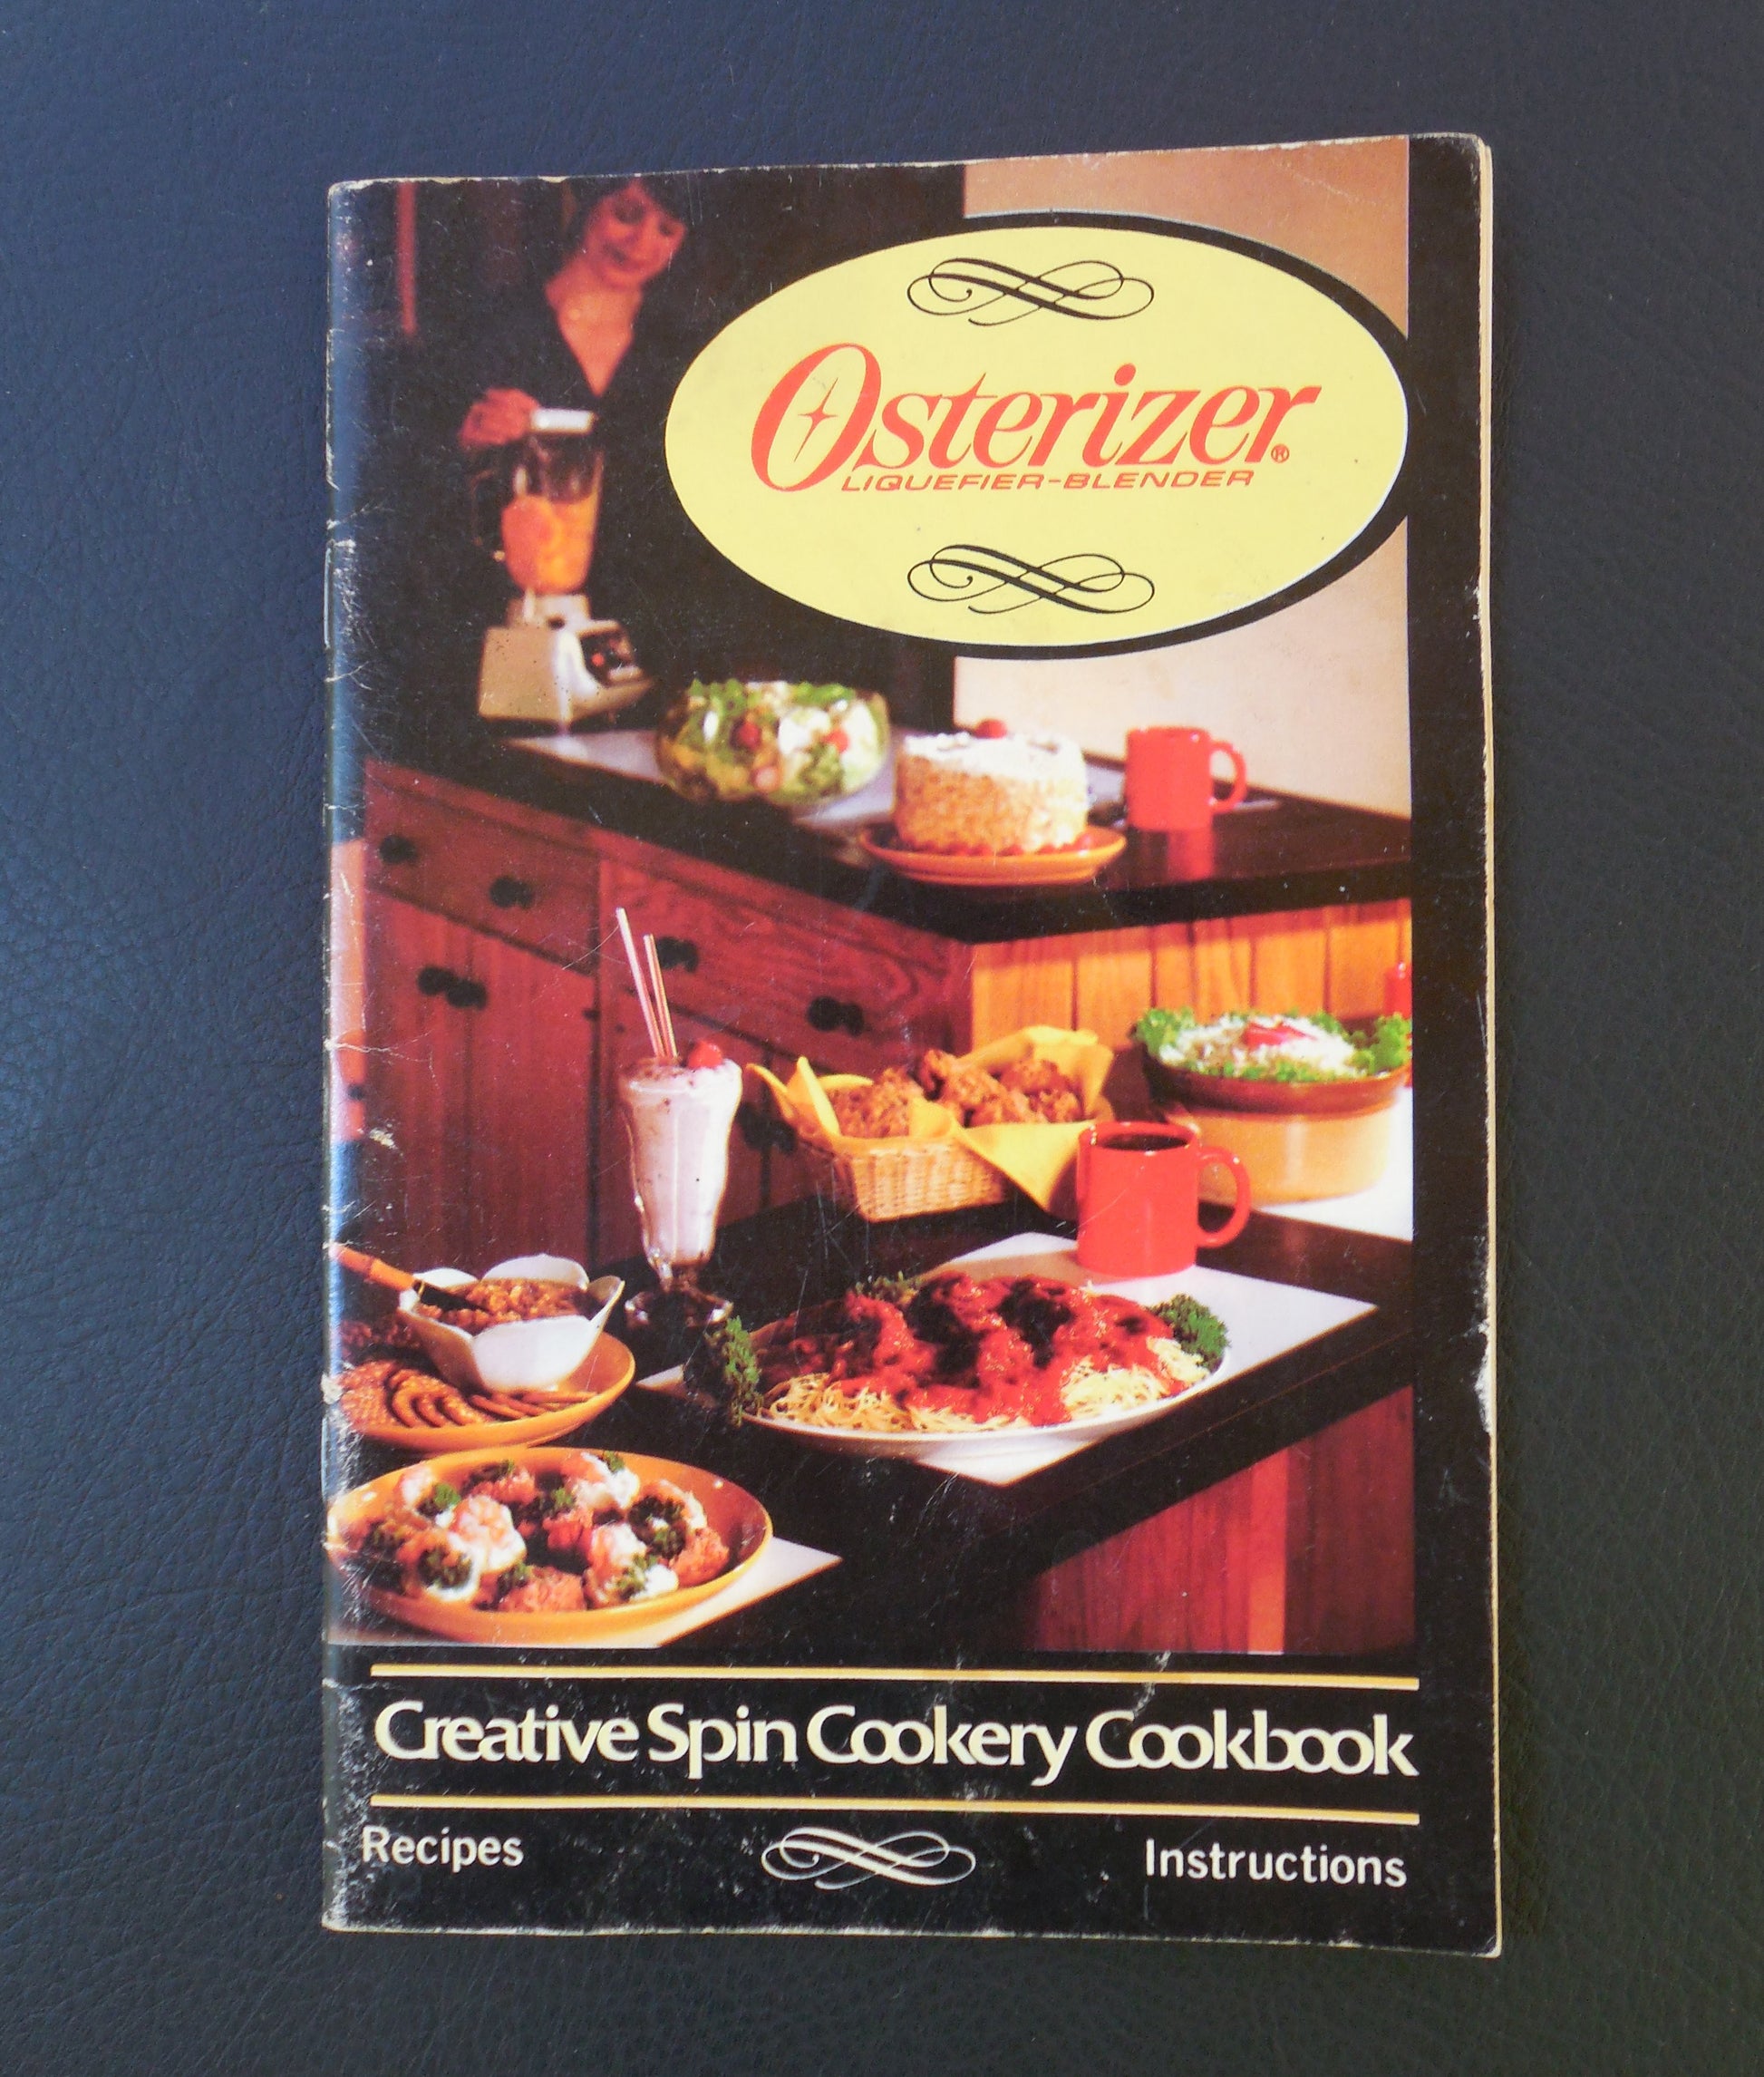 Osterizer 1984 Oster Blender Cookbook Recipe Instruction Manual Booklet 